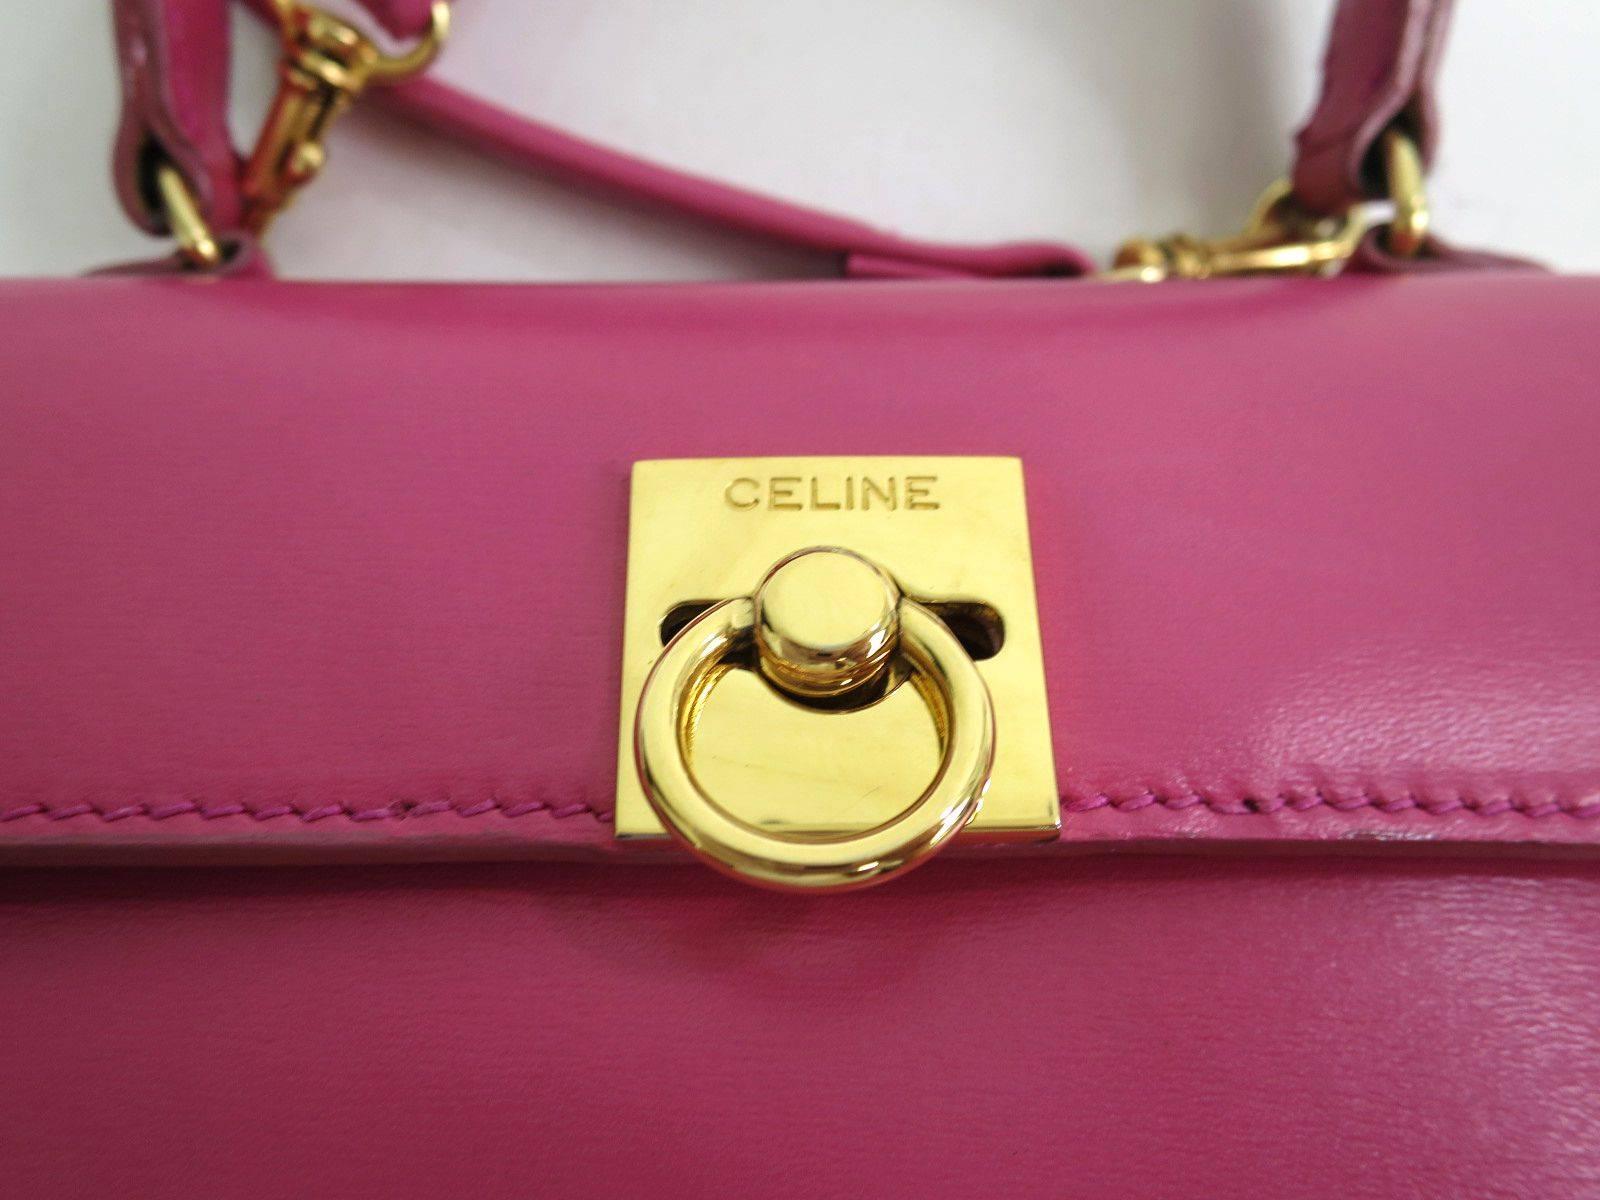 ANMERKUNGEN DES KURATORS

Wenn Sie unsere anderen Celine-Schachtel-Taschen im Kelly-Stil verpasst haben:: machen Sie mit dieser auffälligen rosa Version nicht denselben Fehler! Erwarten Sie einen schnellen Verkauf dieser Schönheit.